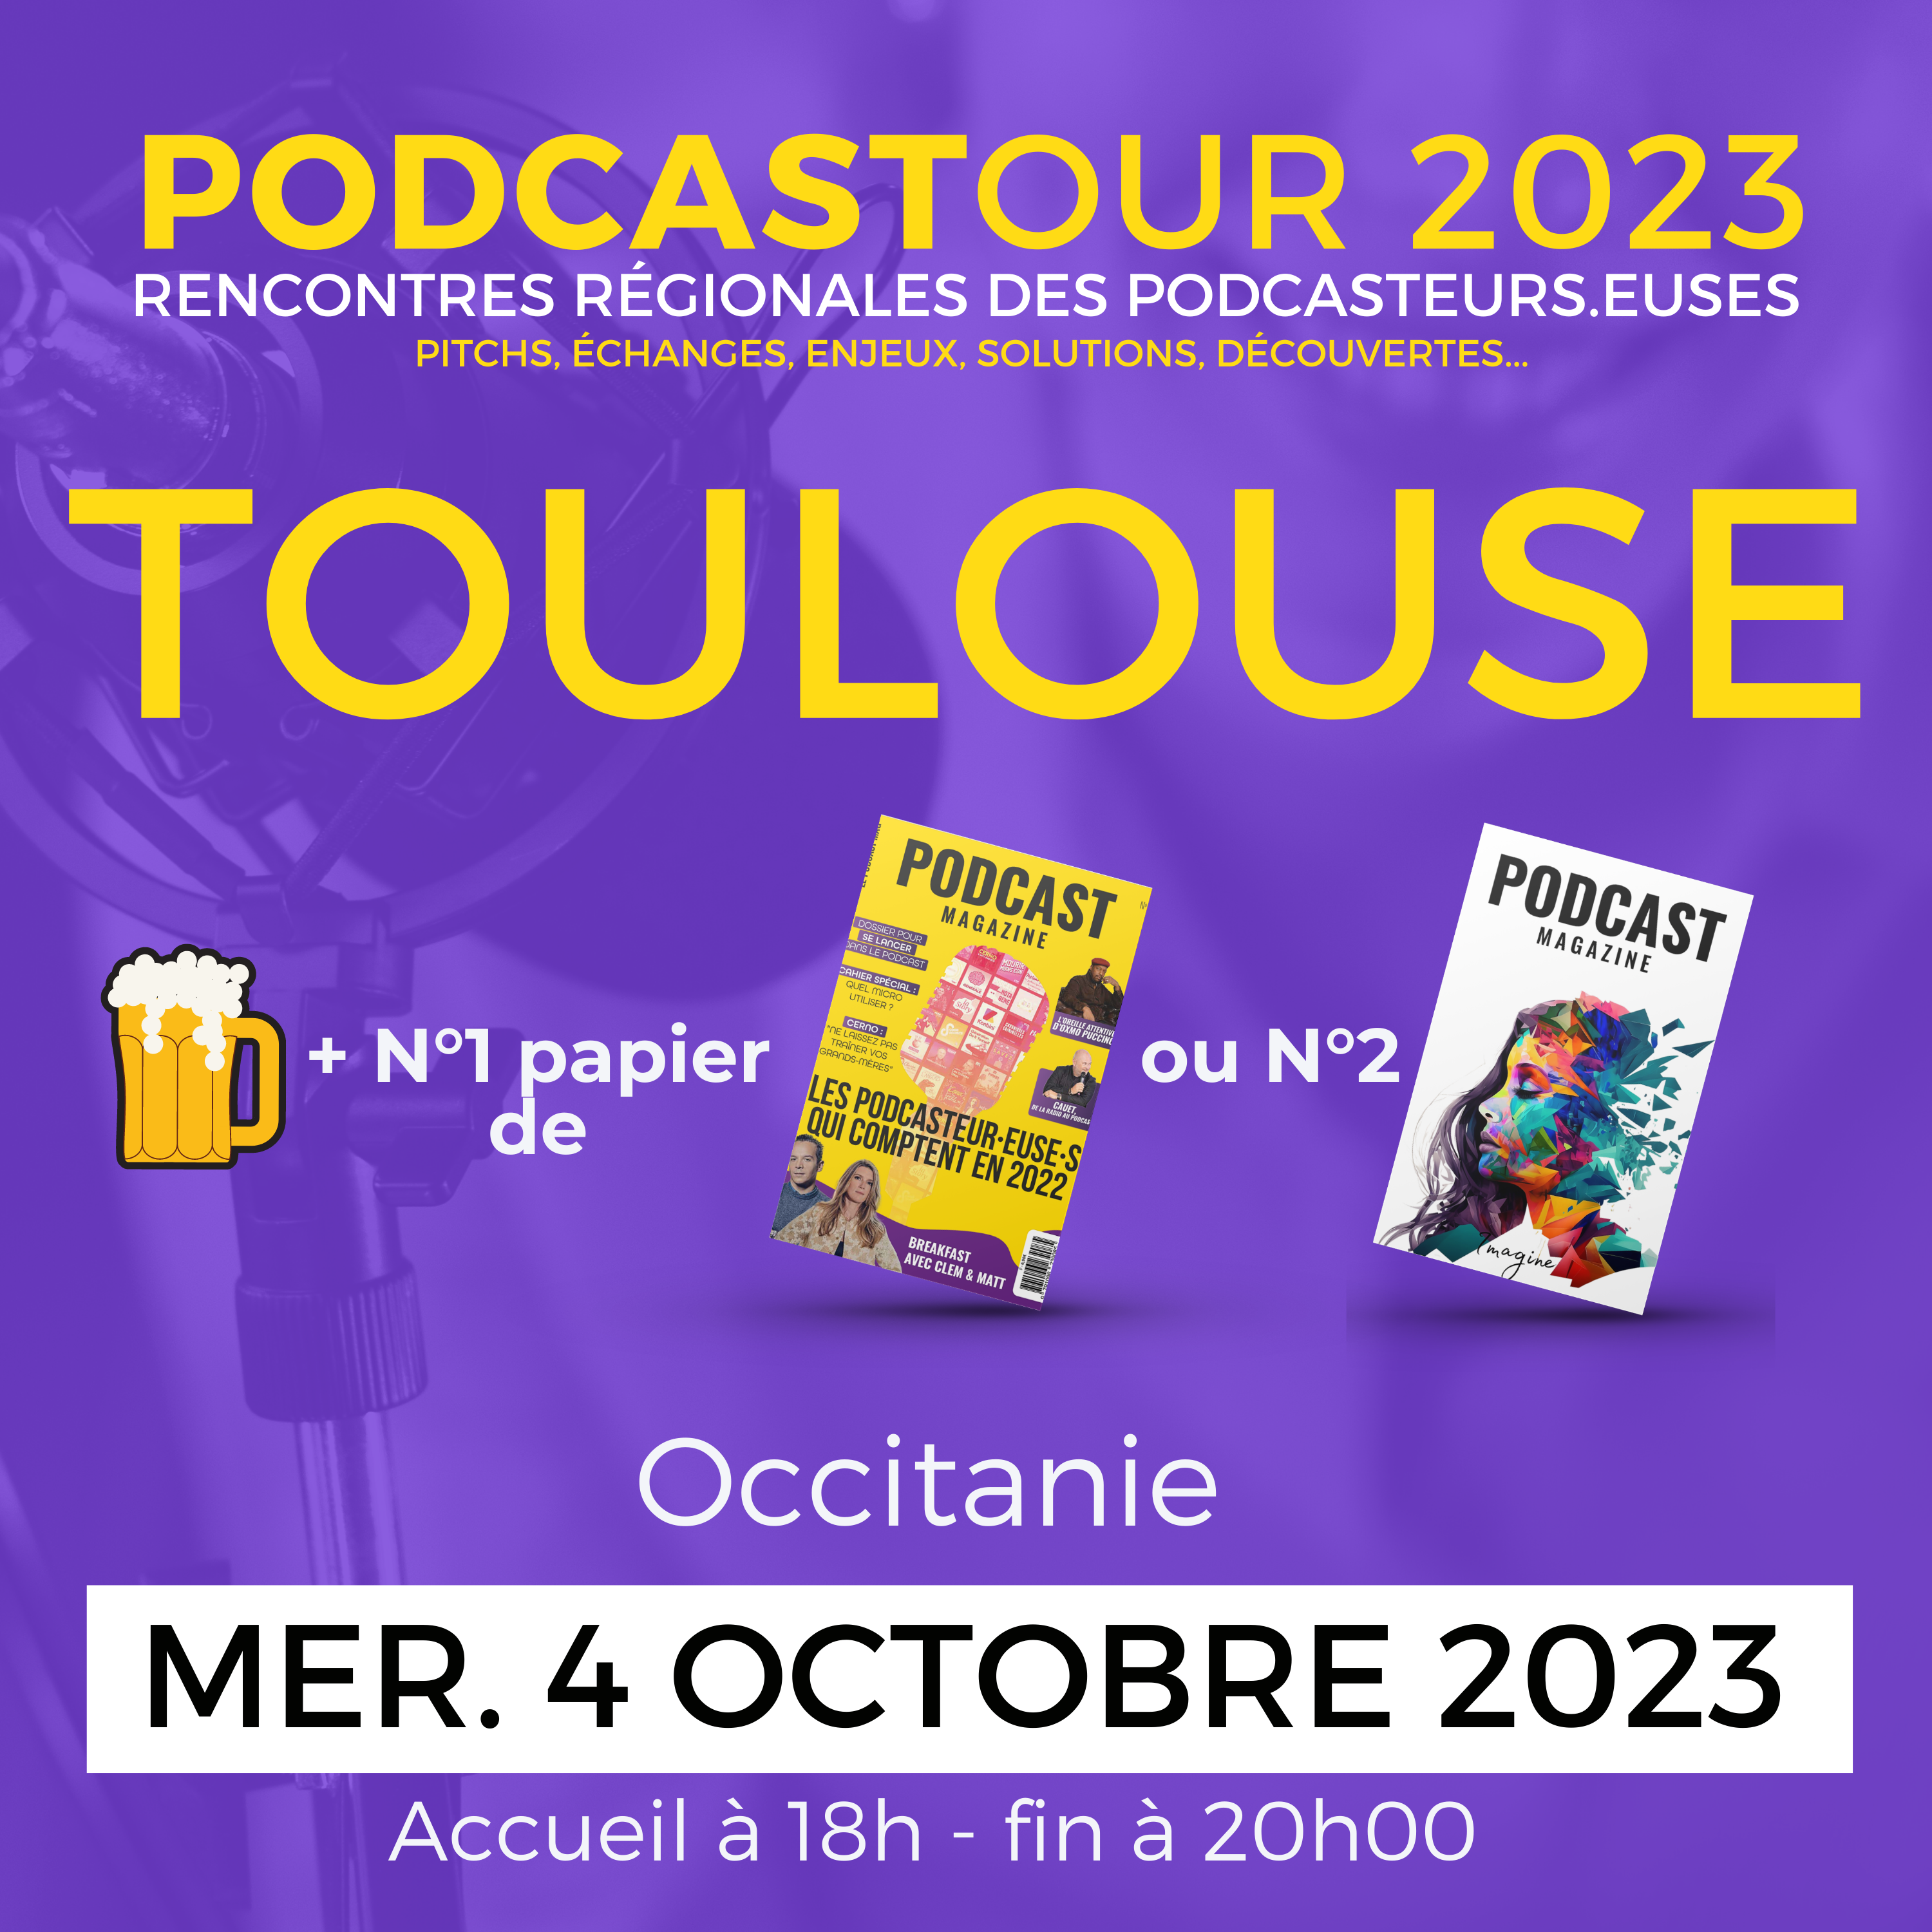 L'image indique le Podcastour à Toulouse en montrant une chope de bière, un exemplaire 1 ou 2 en version papier du Podcast magazine et la date du 4 octobre de 18h à 20h